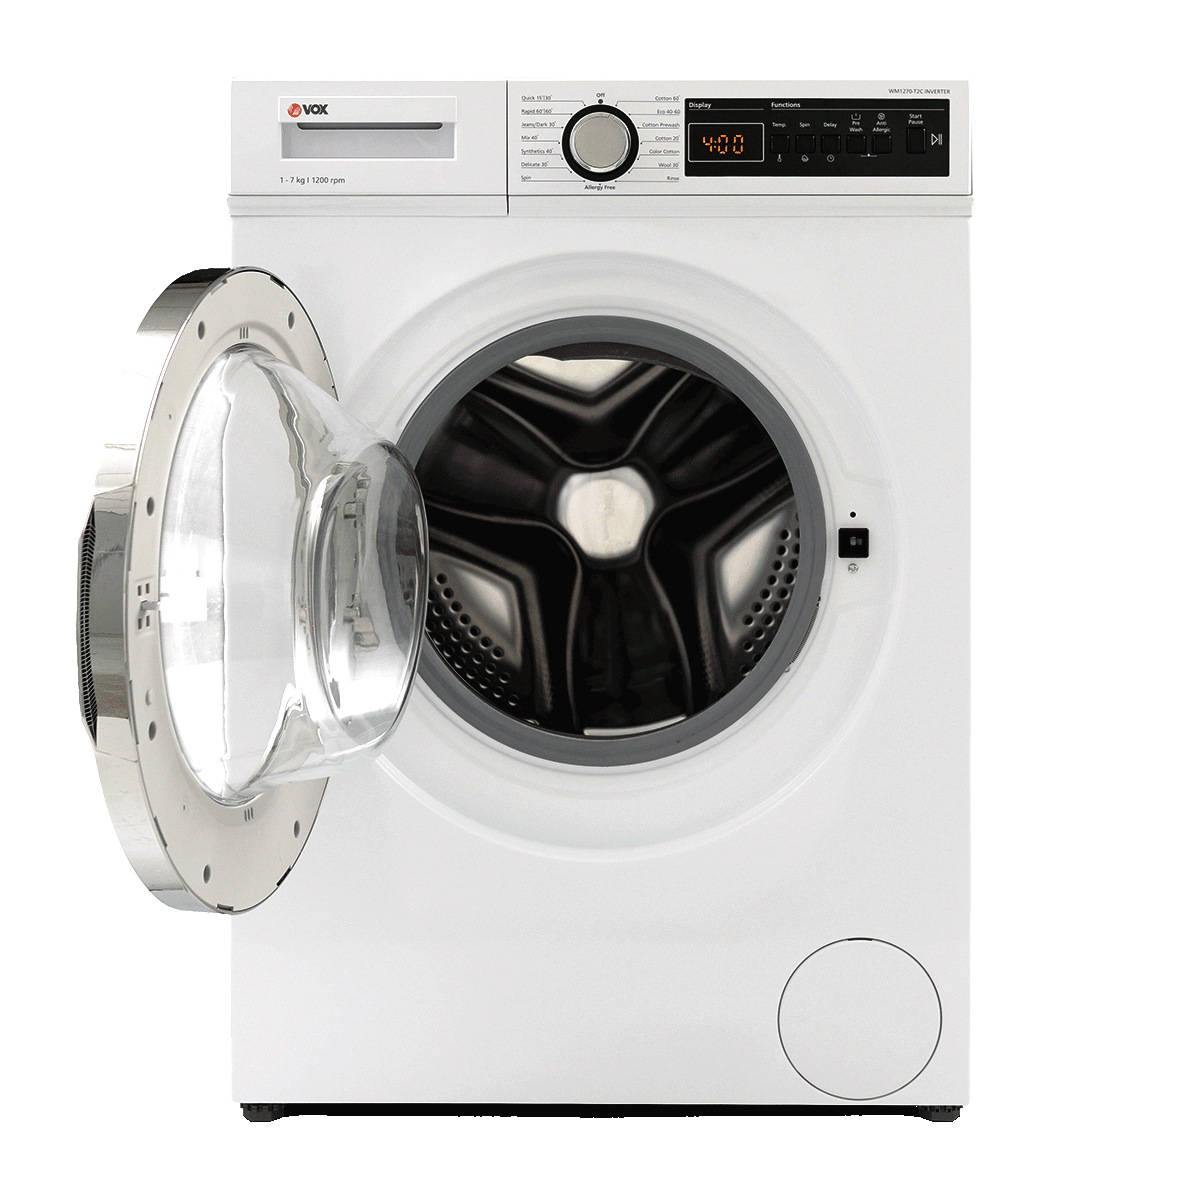 Washing machine WM1270-T2B Inverter 